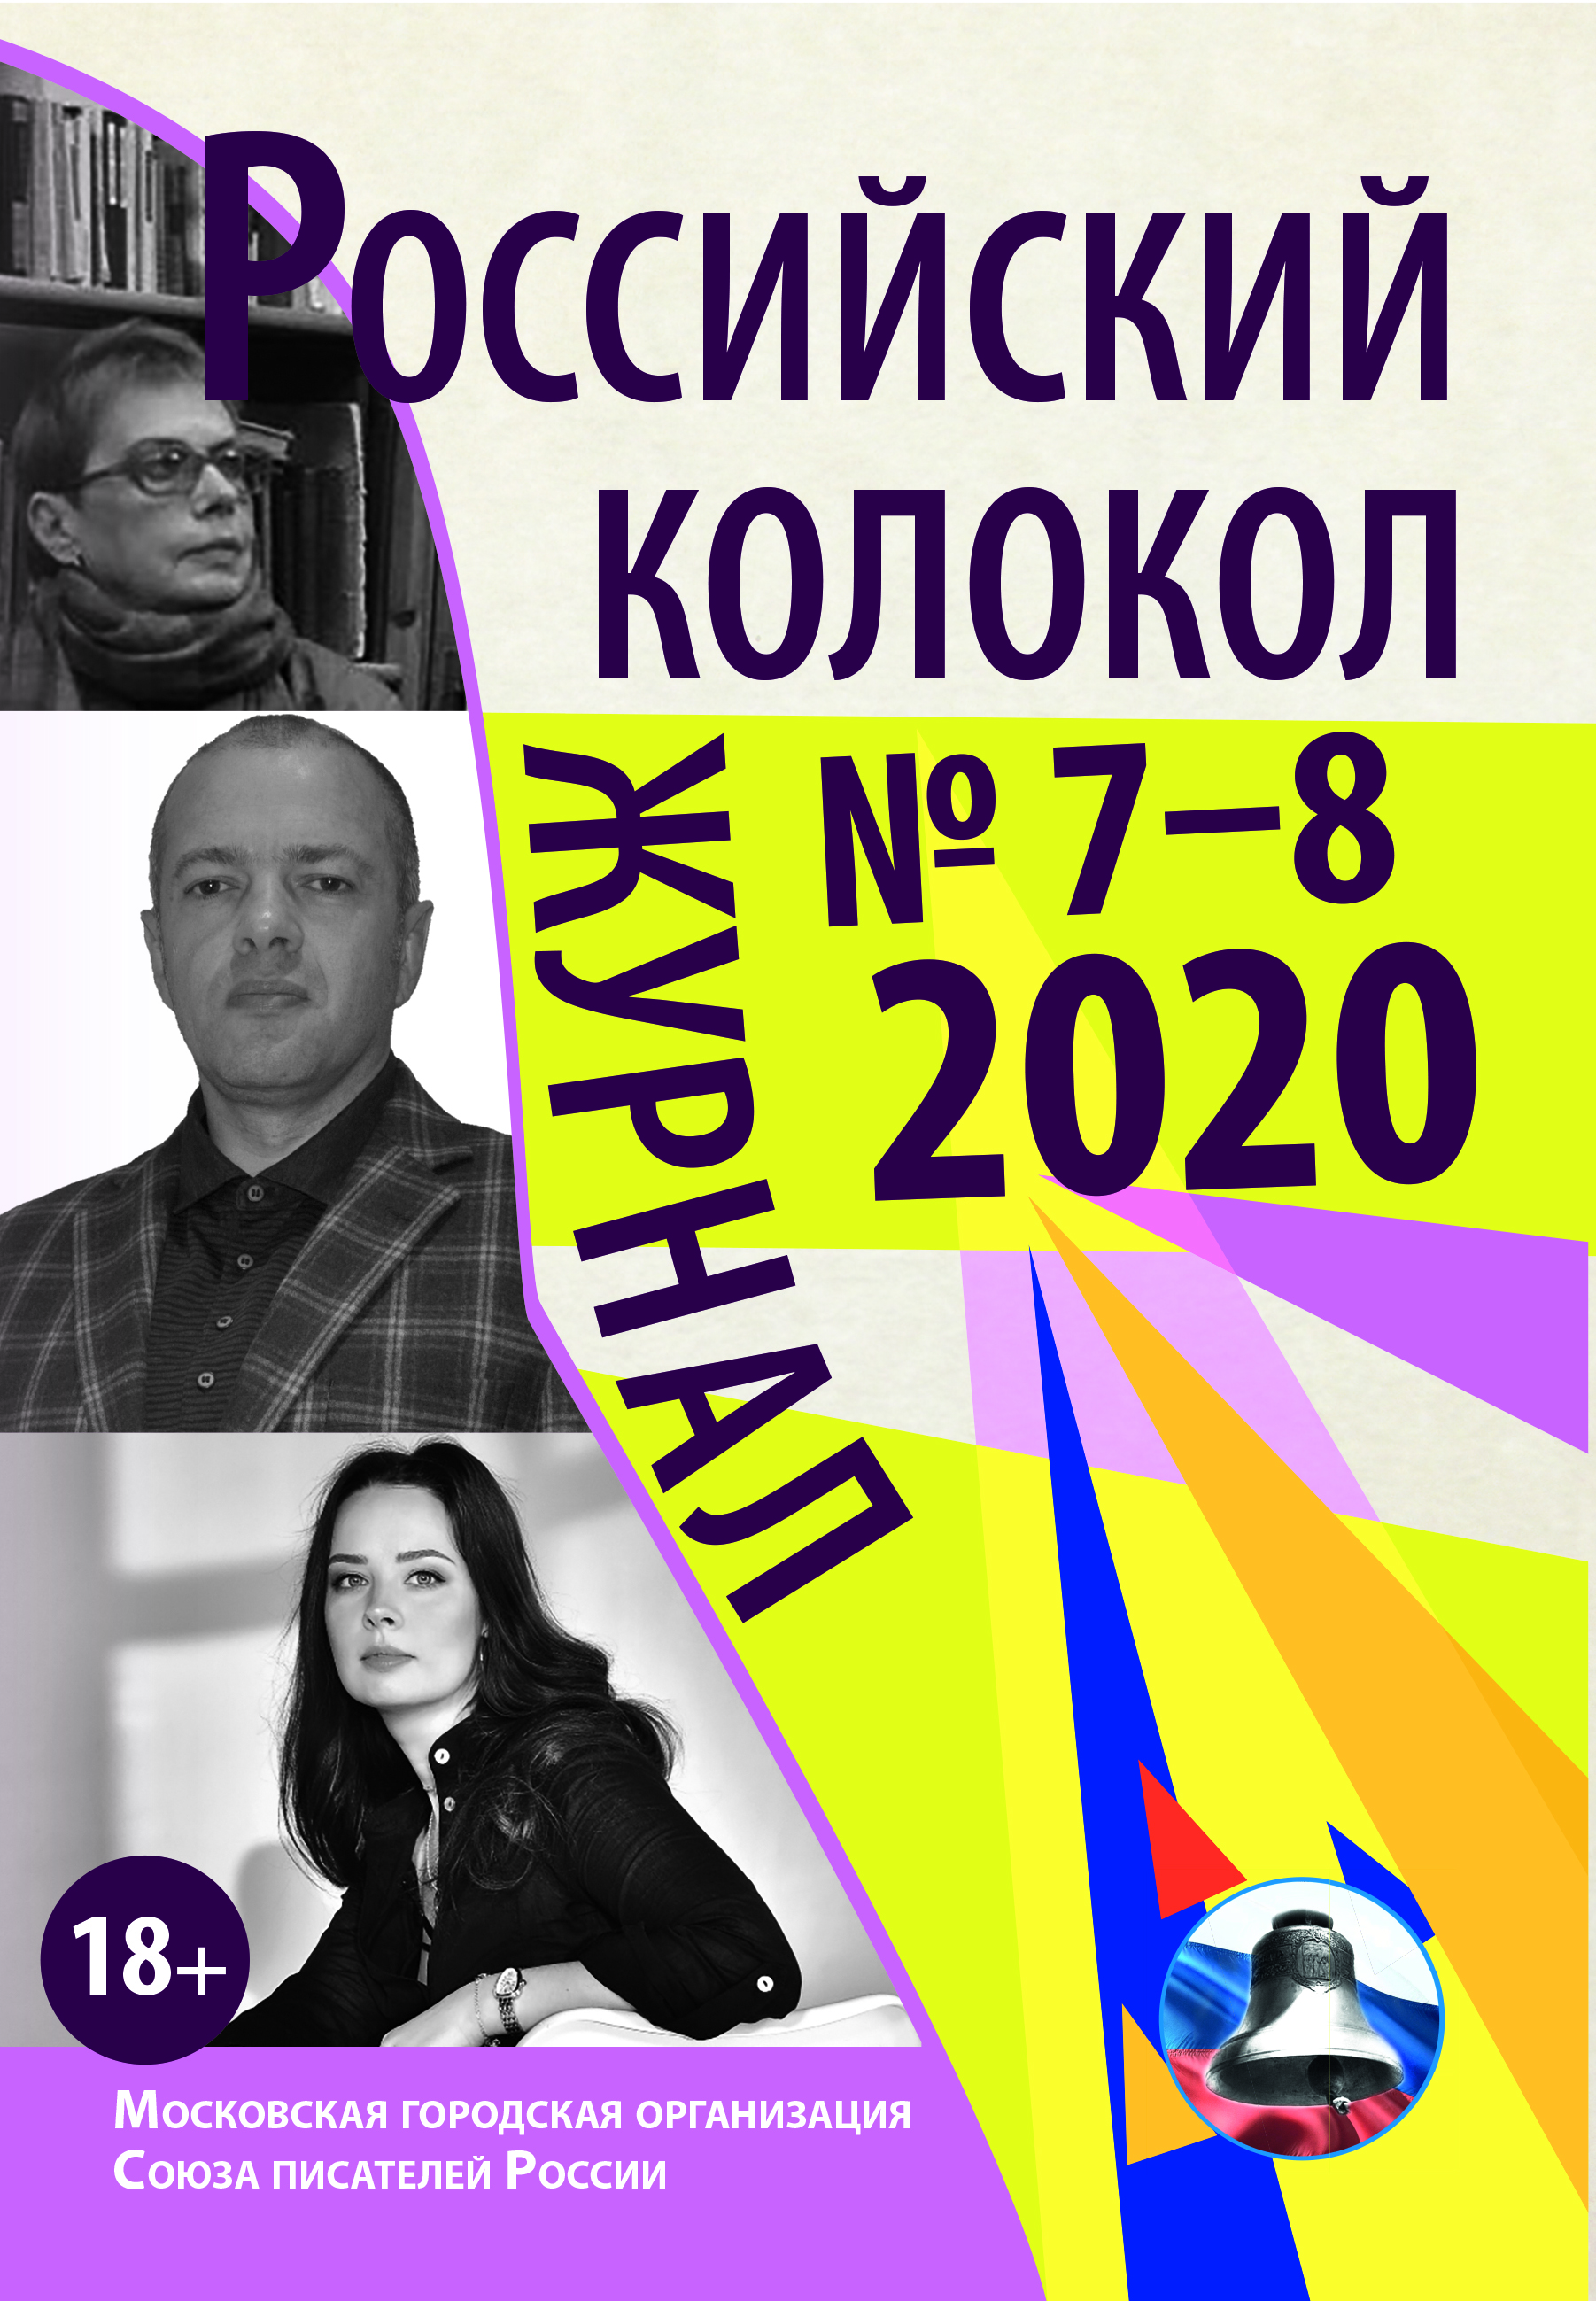 альманах Российский колокол 2020 № 7 - 8 